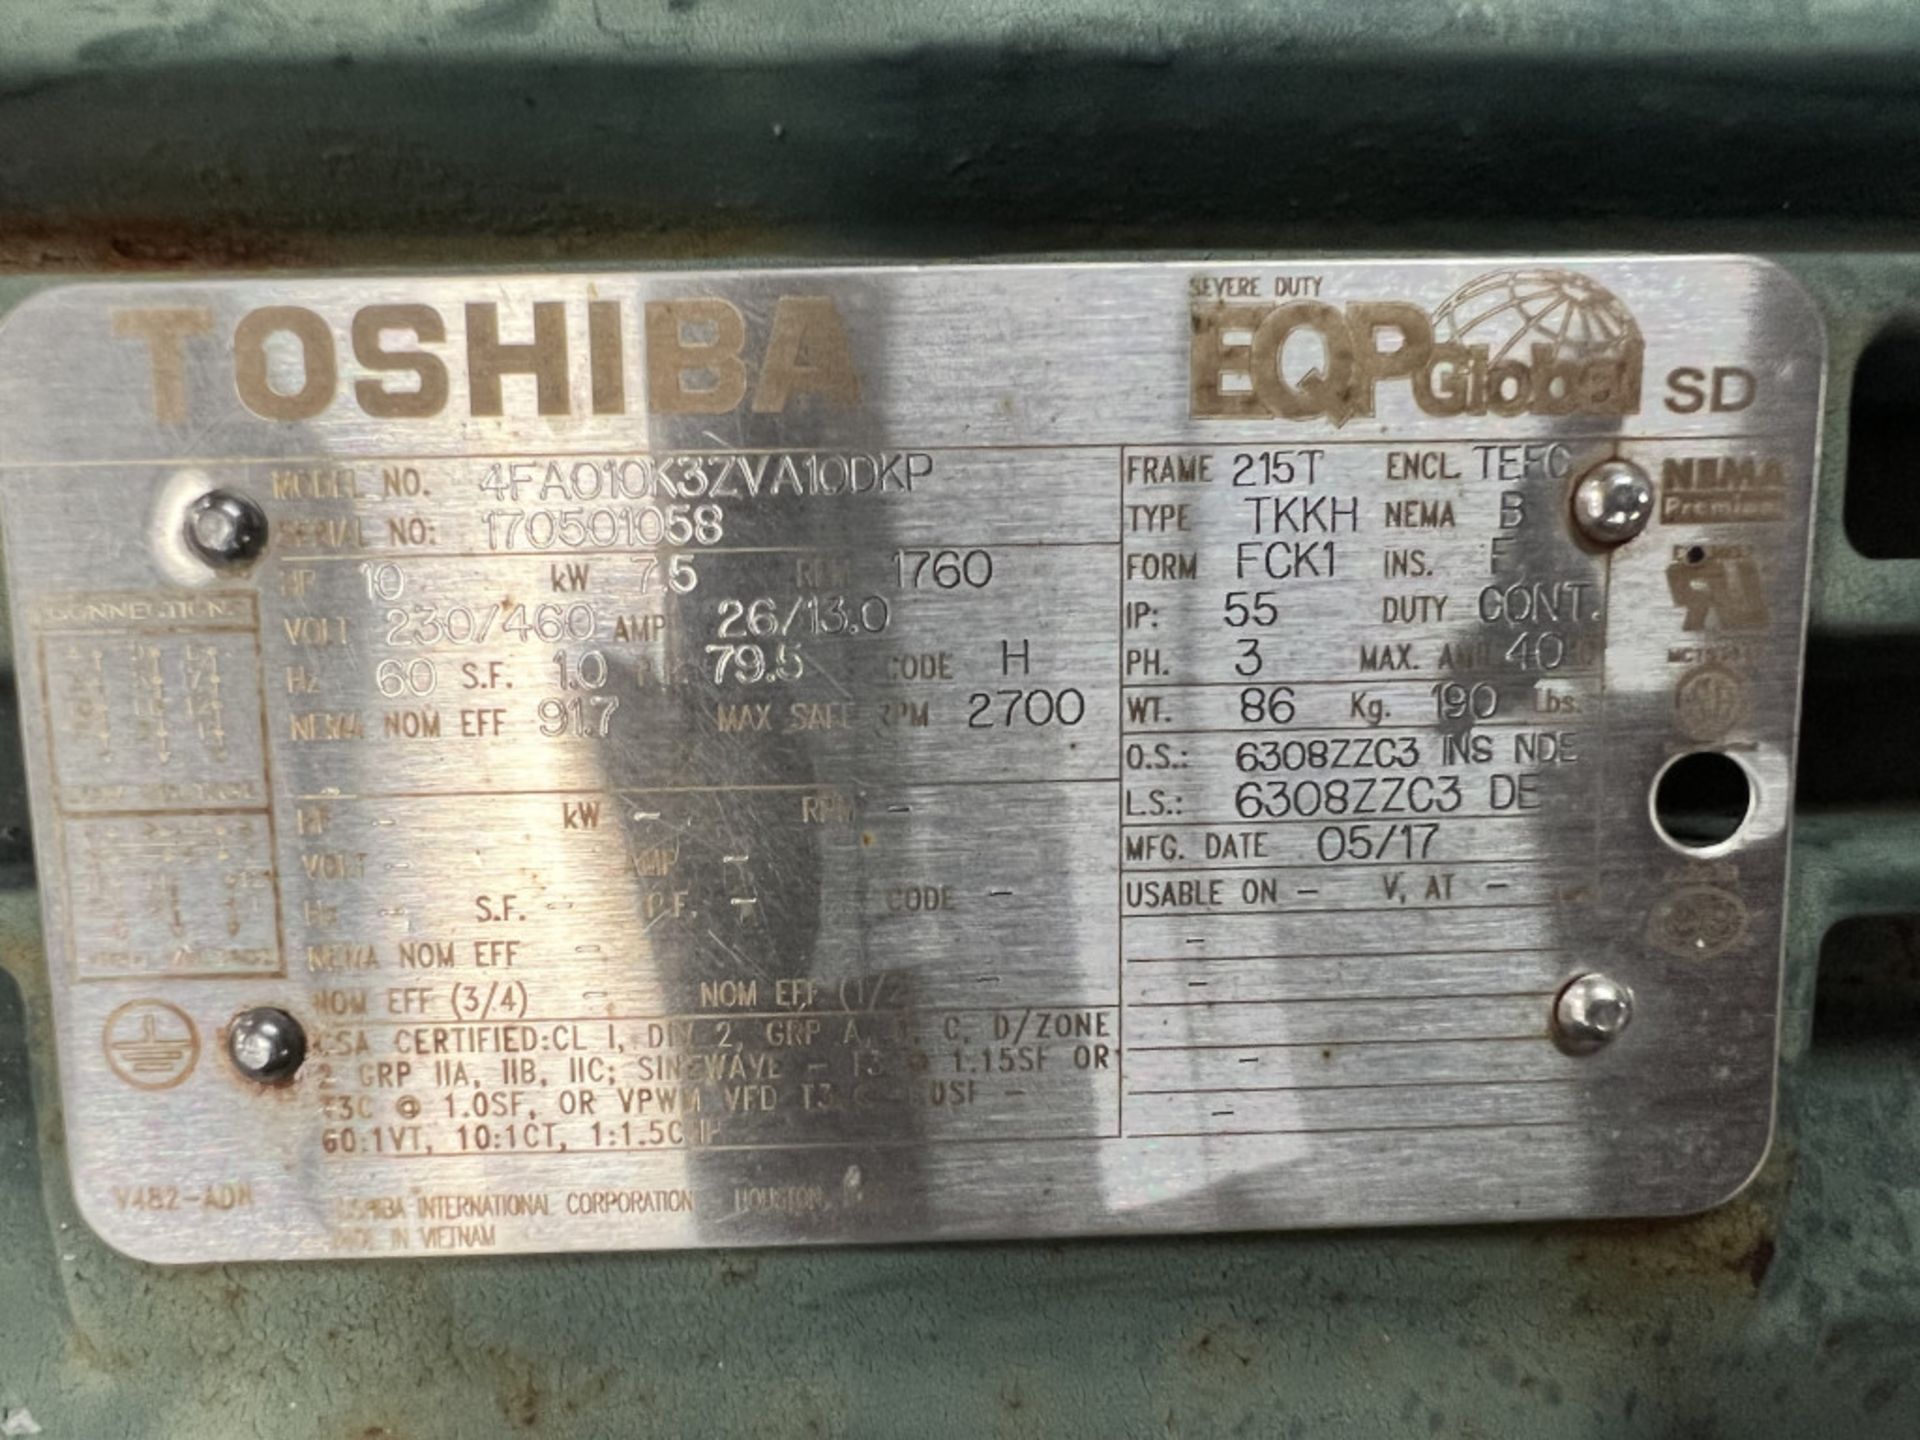 Lot of (2) Toshiba 10 HP Motors | Model No. 4FA010K32VA10DKP; 10 HP; 230/460V; 1760 RPM; Tag: - Image 4 of 5